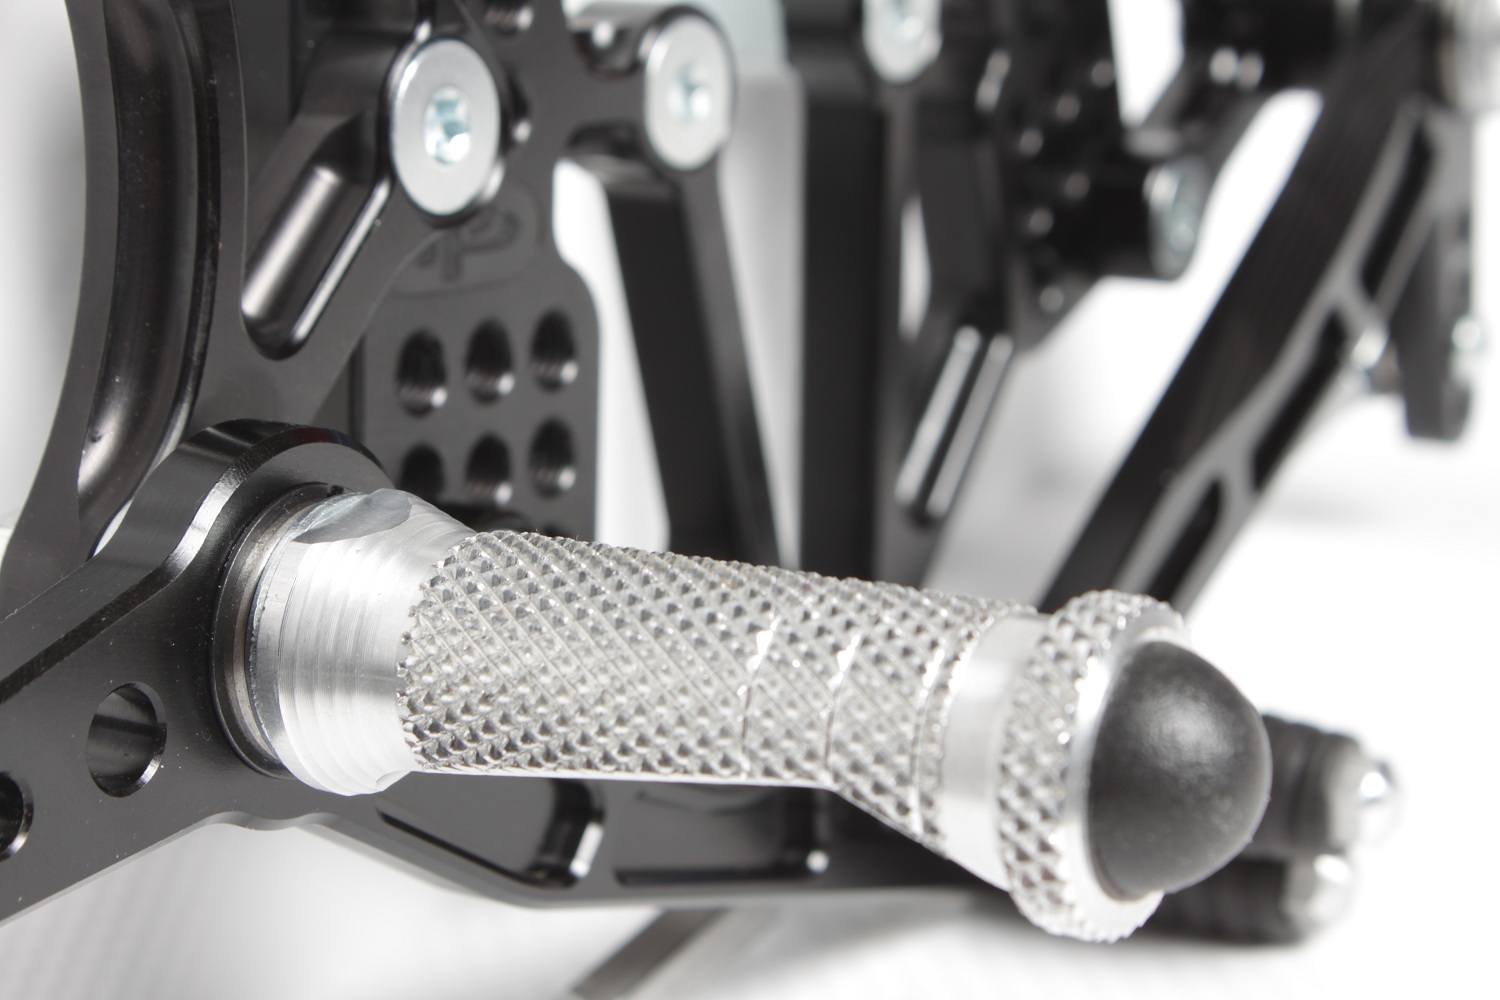 MZS Rearsets Adjustable Footrests Footpegs CNC Rear Sets compatible Honda CBR250R CBR300R 2011 2012 2013 2014 2015 2016 2017 Black 